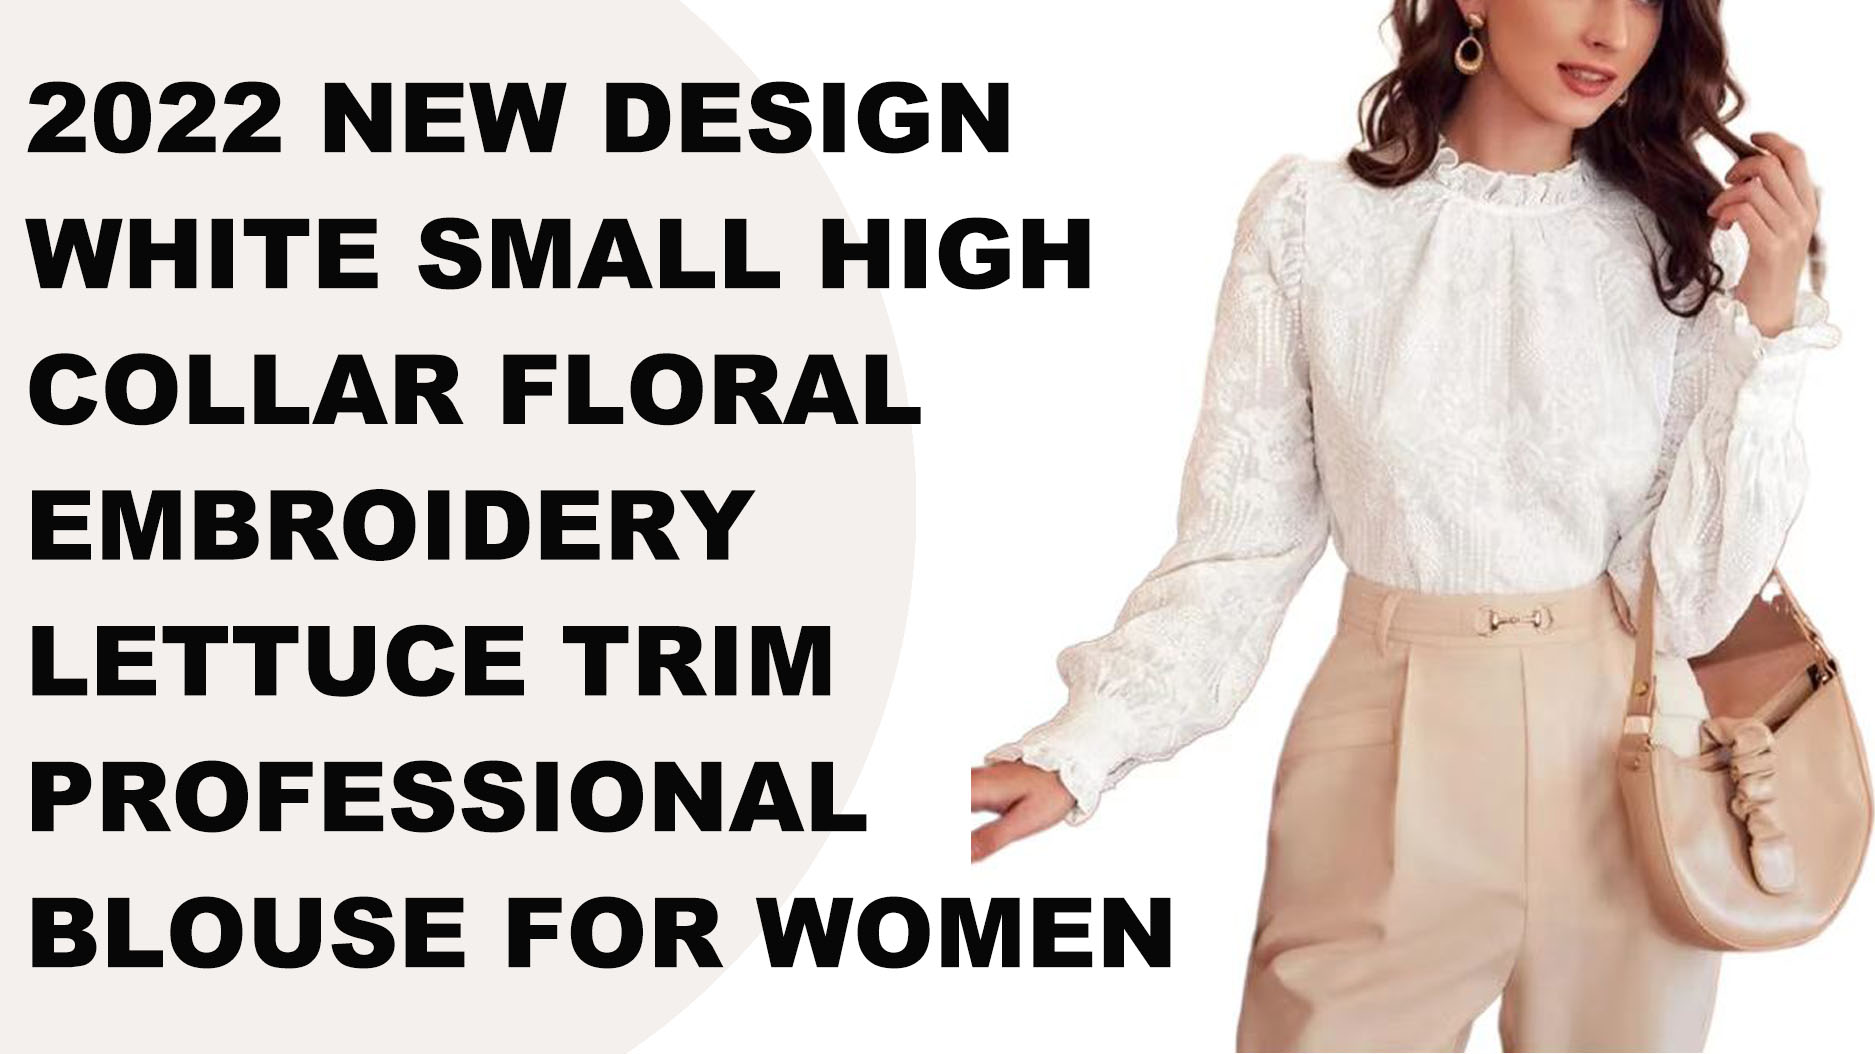 Blusa profesional blanca con cuello alto y bordado floral para mujer, nuevo diseño, 2022